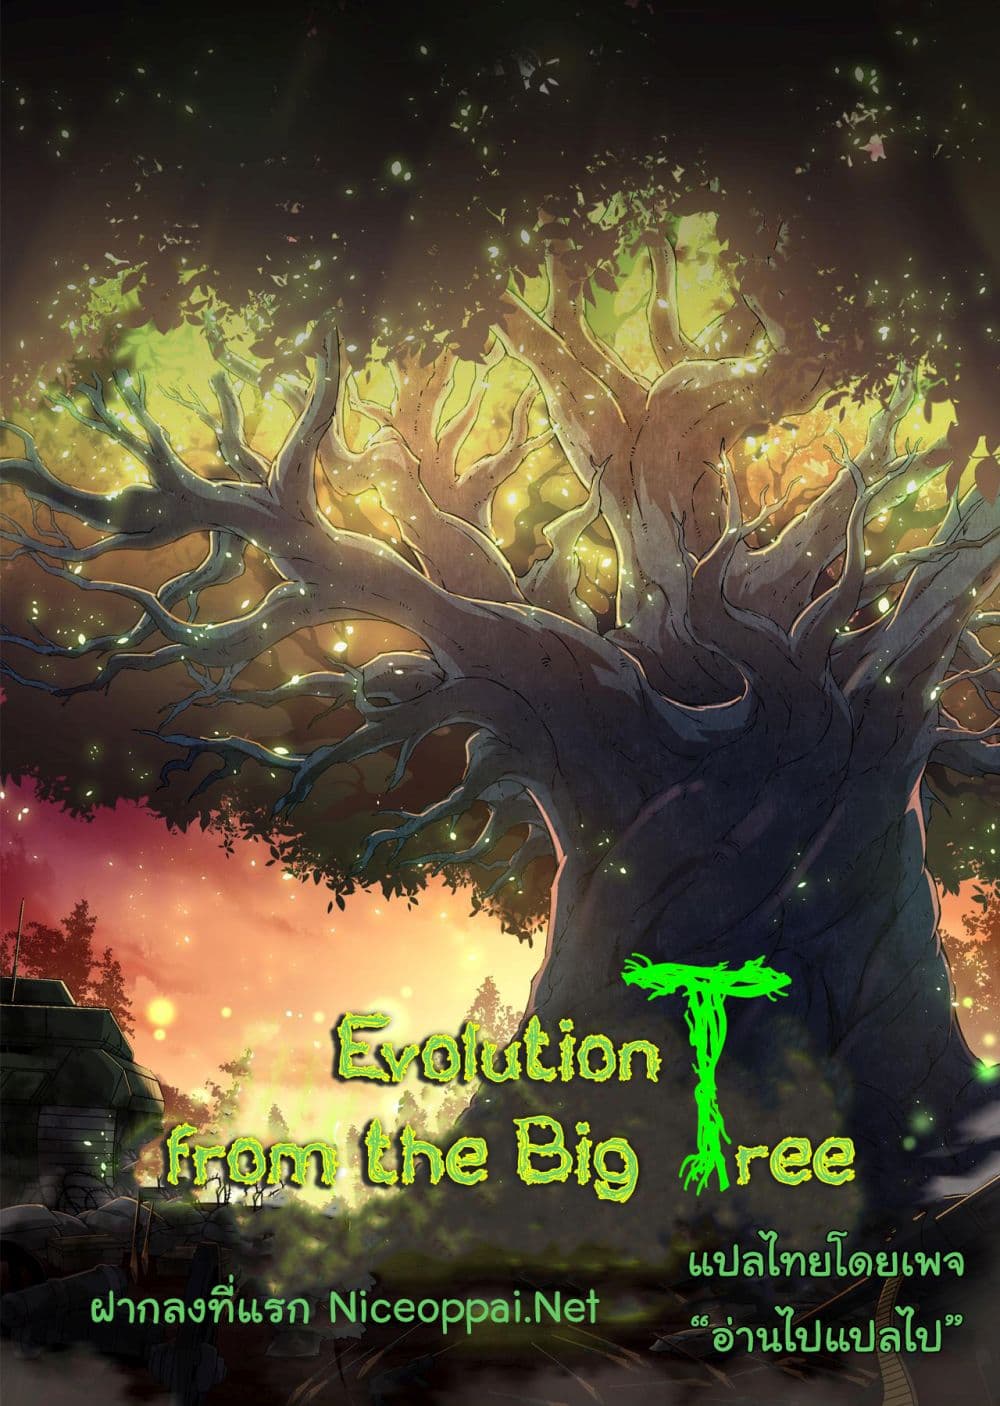 Evolution from the Big Tree Ã Â¸â€¢Ã Â¸Â­Ã Â¸â„¢Ã Â¸â€”Ã Â¸ÂµÃ Â¹Ë† 27 (45)